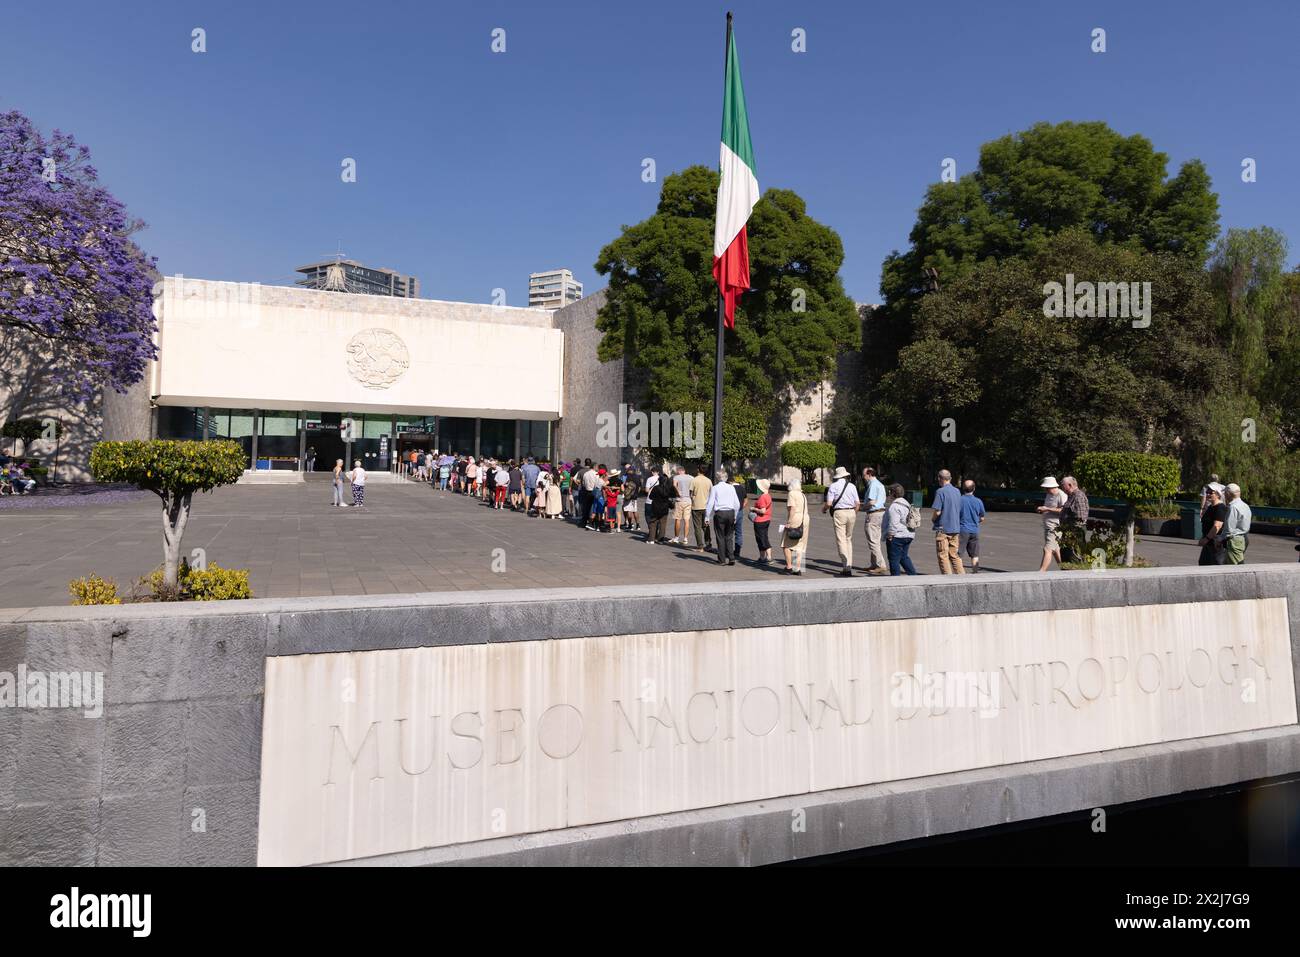 Musée national d'anthropologie, Mexico ; - vue extérieure de l'entrée montrant des foules de touristes dans une file d'attente pour entrer. Mexique. Banque D'Images